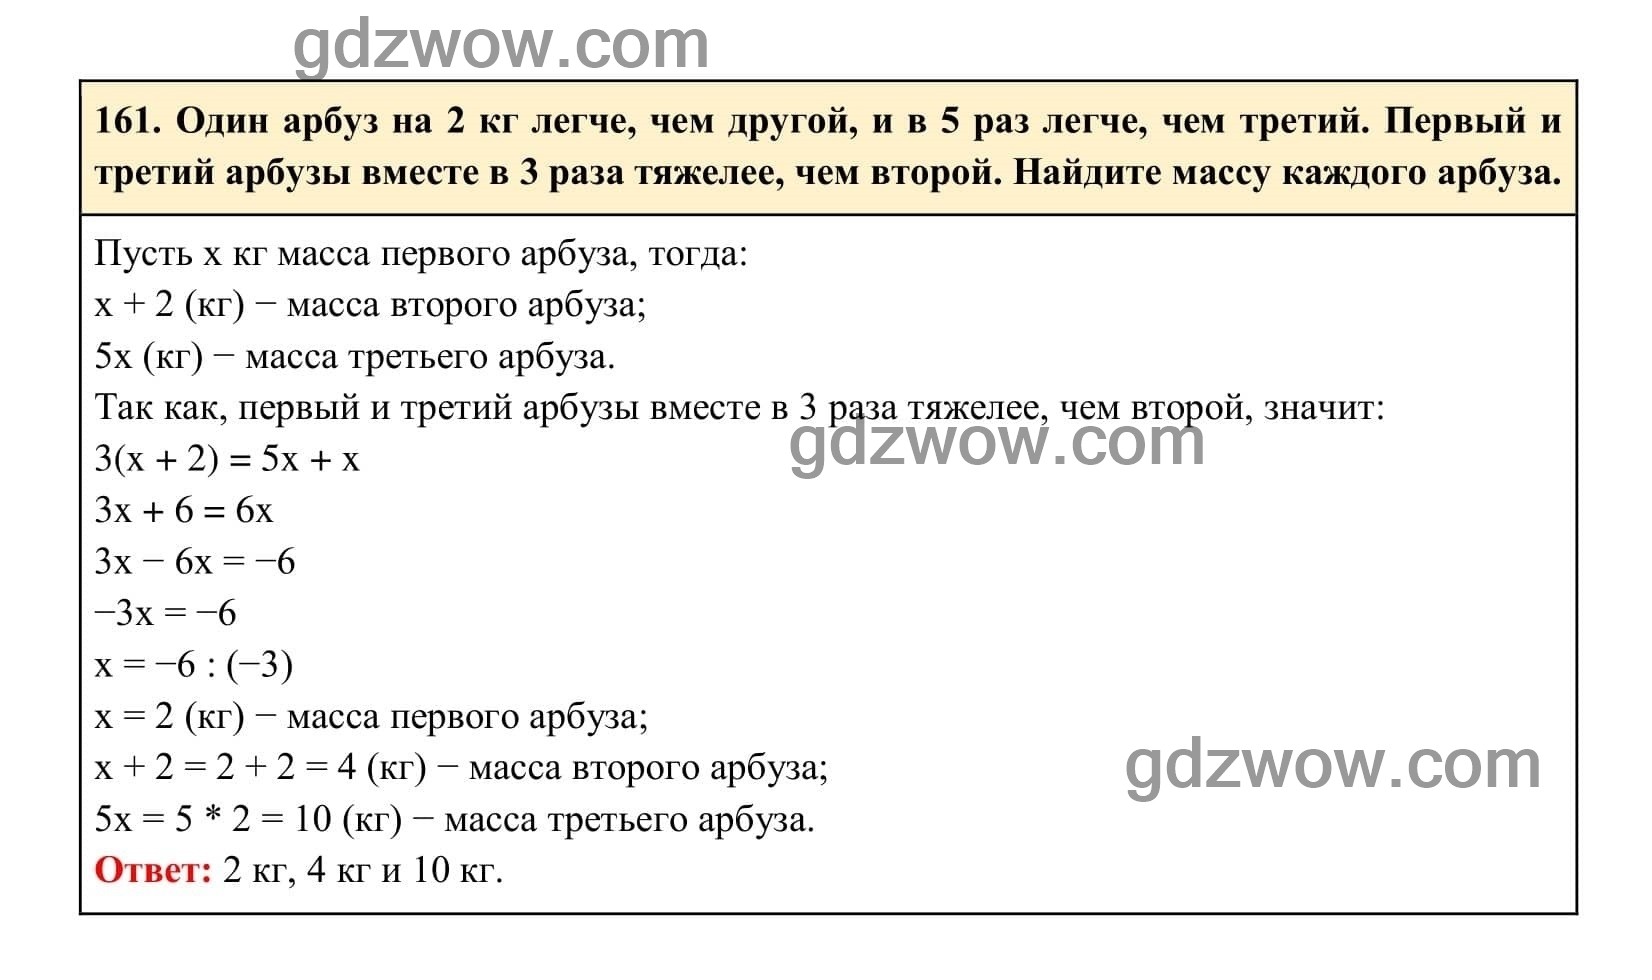 Упражнение 161 - ГДЗ по Алгебре 7 класс Учебник Макарычев (решебник) - GDZwow